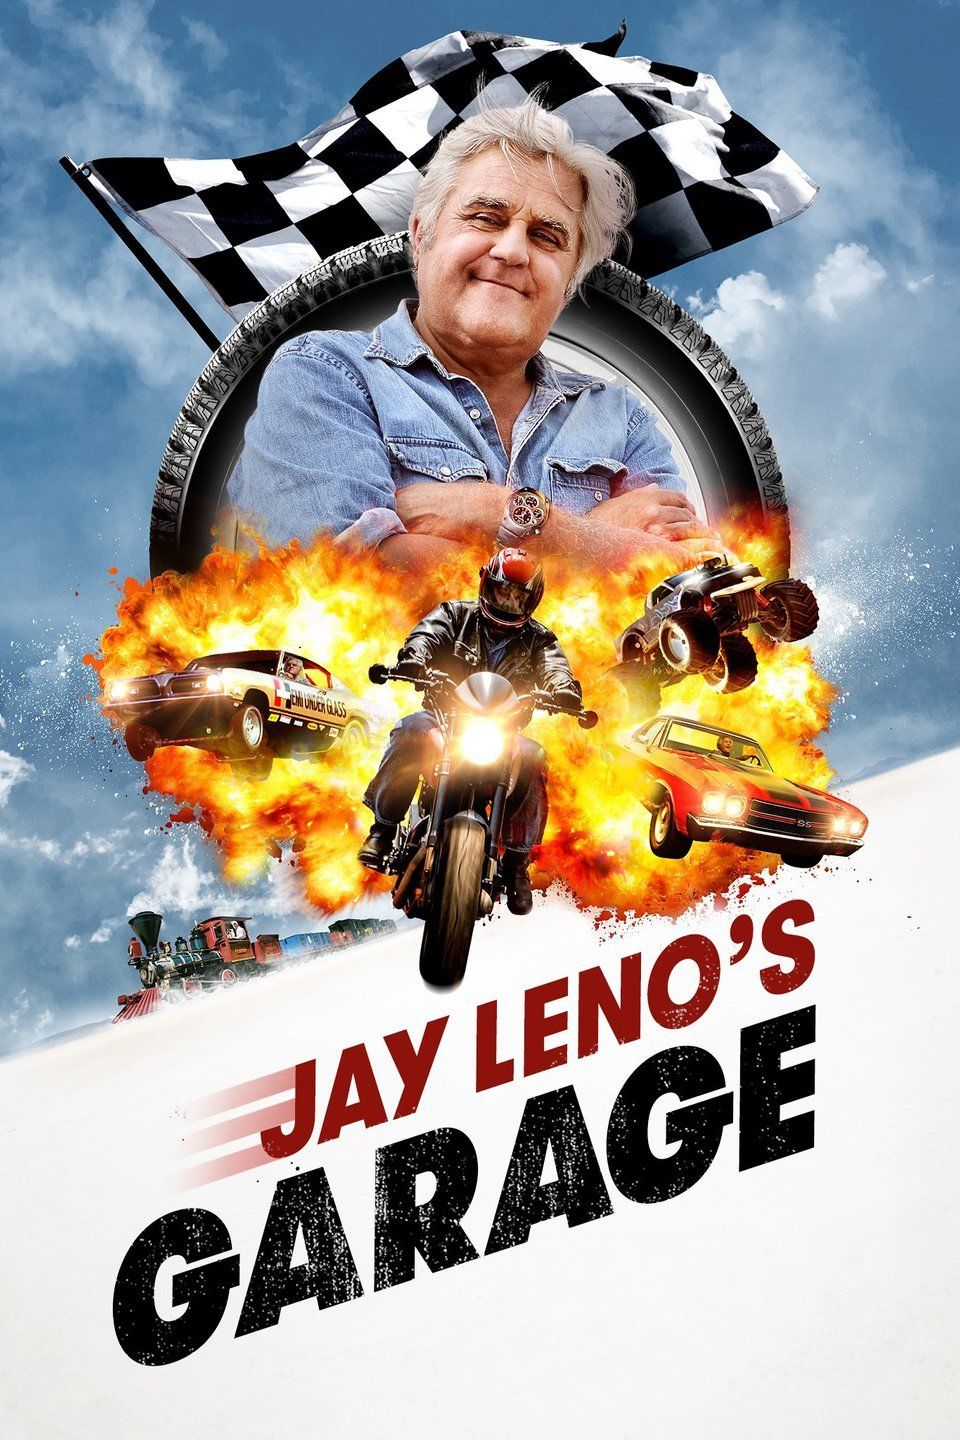 Jay Leno's Garage teaser image